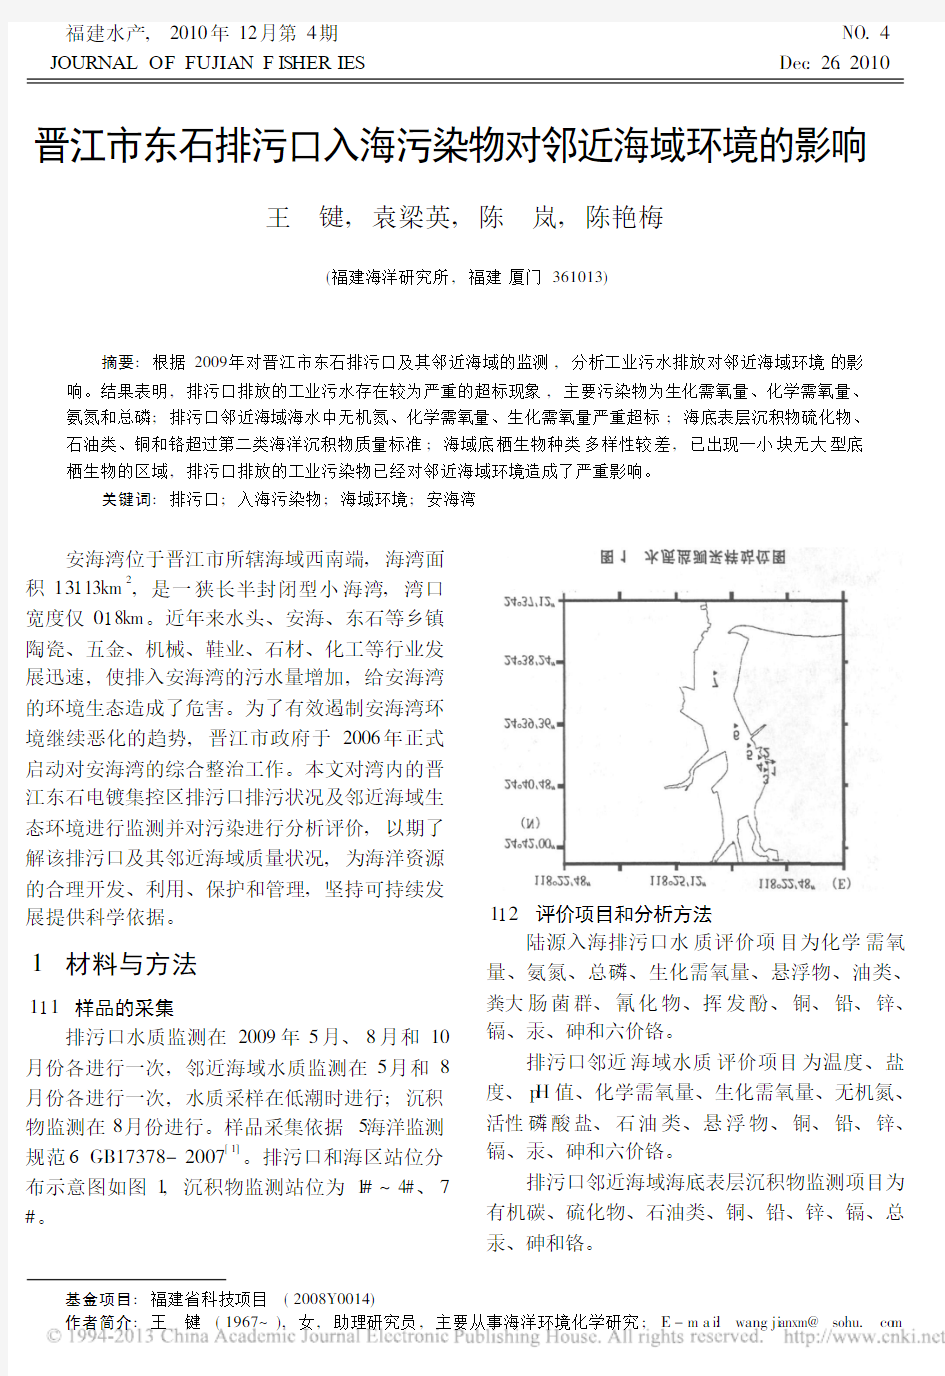 晋江市东石排污口入海污染物对邻近海域环境的影响_王键